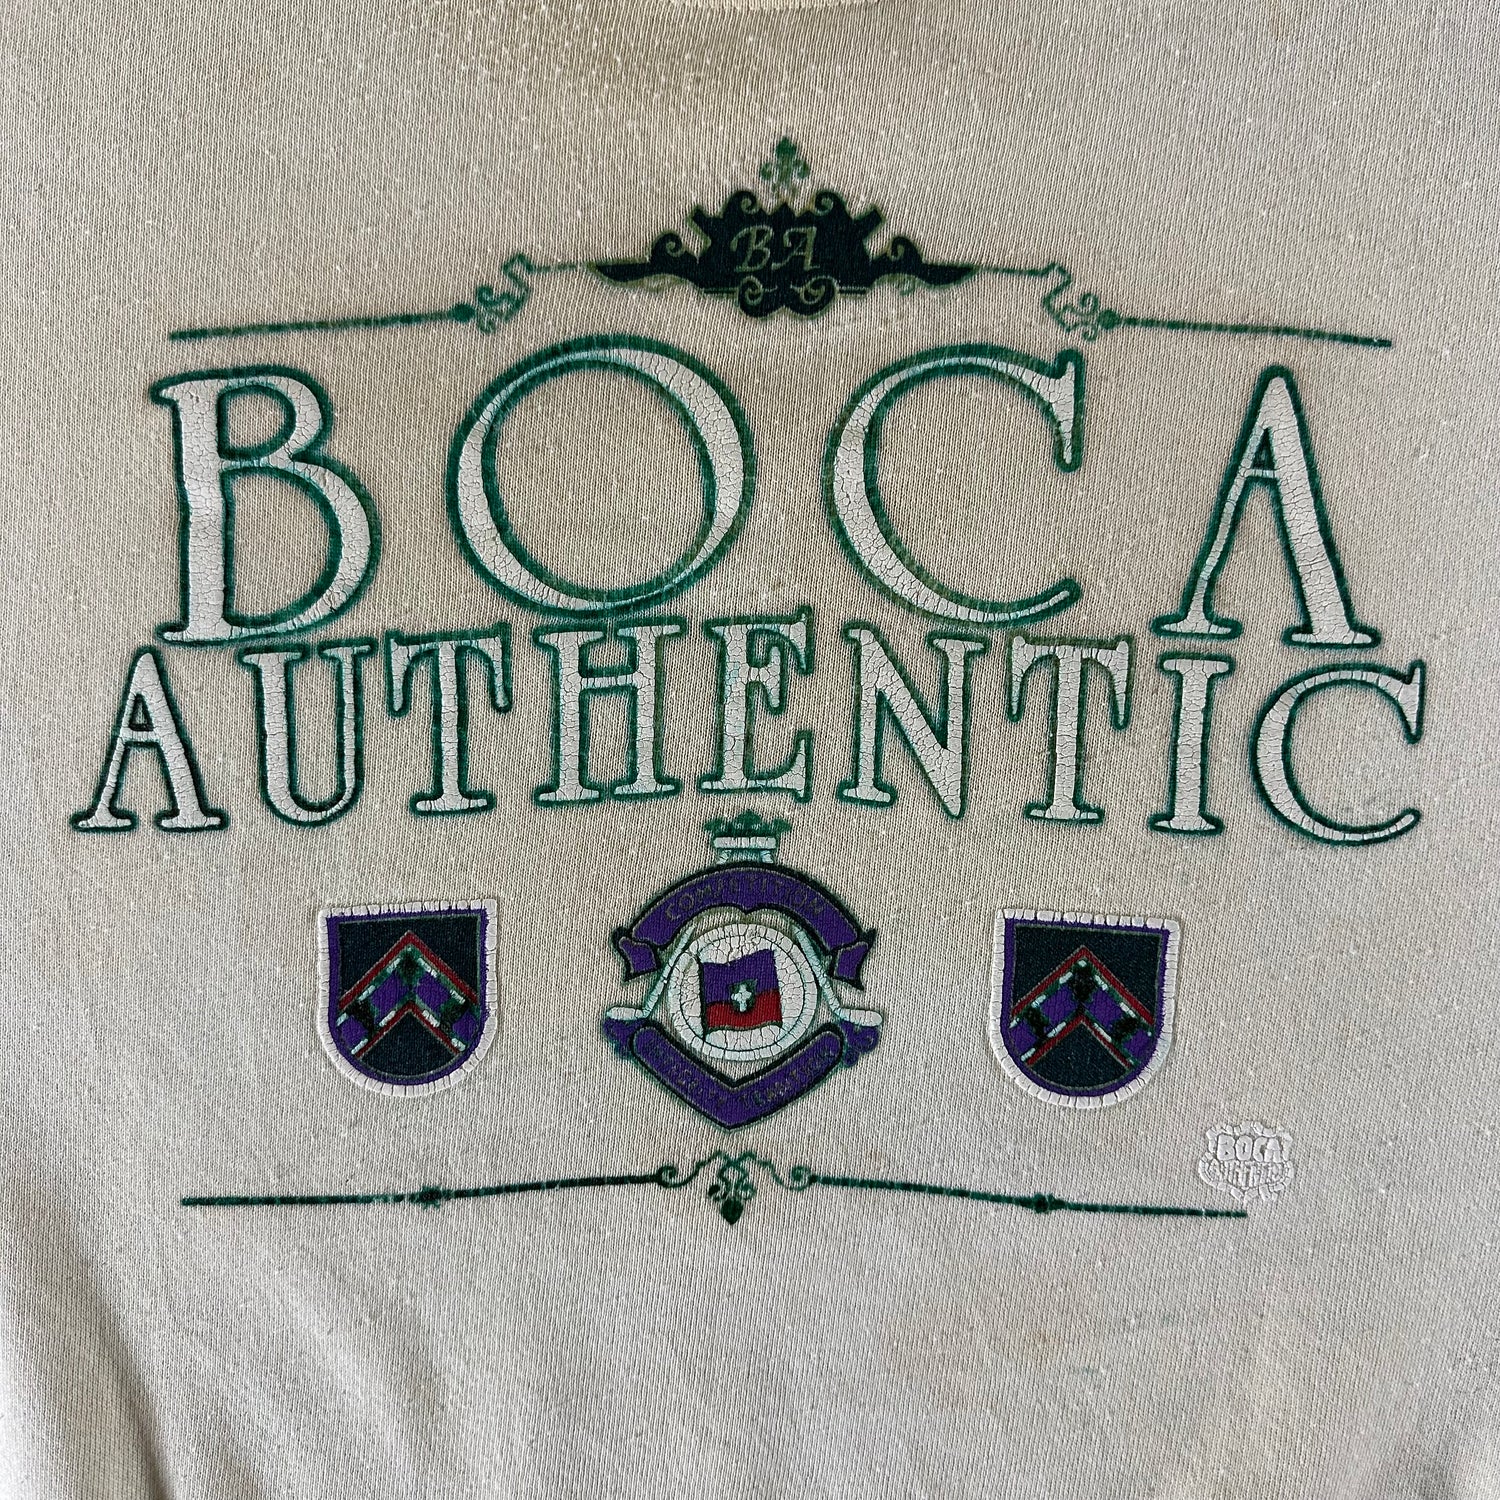 Vintage 1990s Boga Authentic Sweatshirt size XL